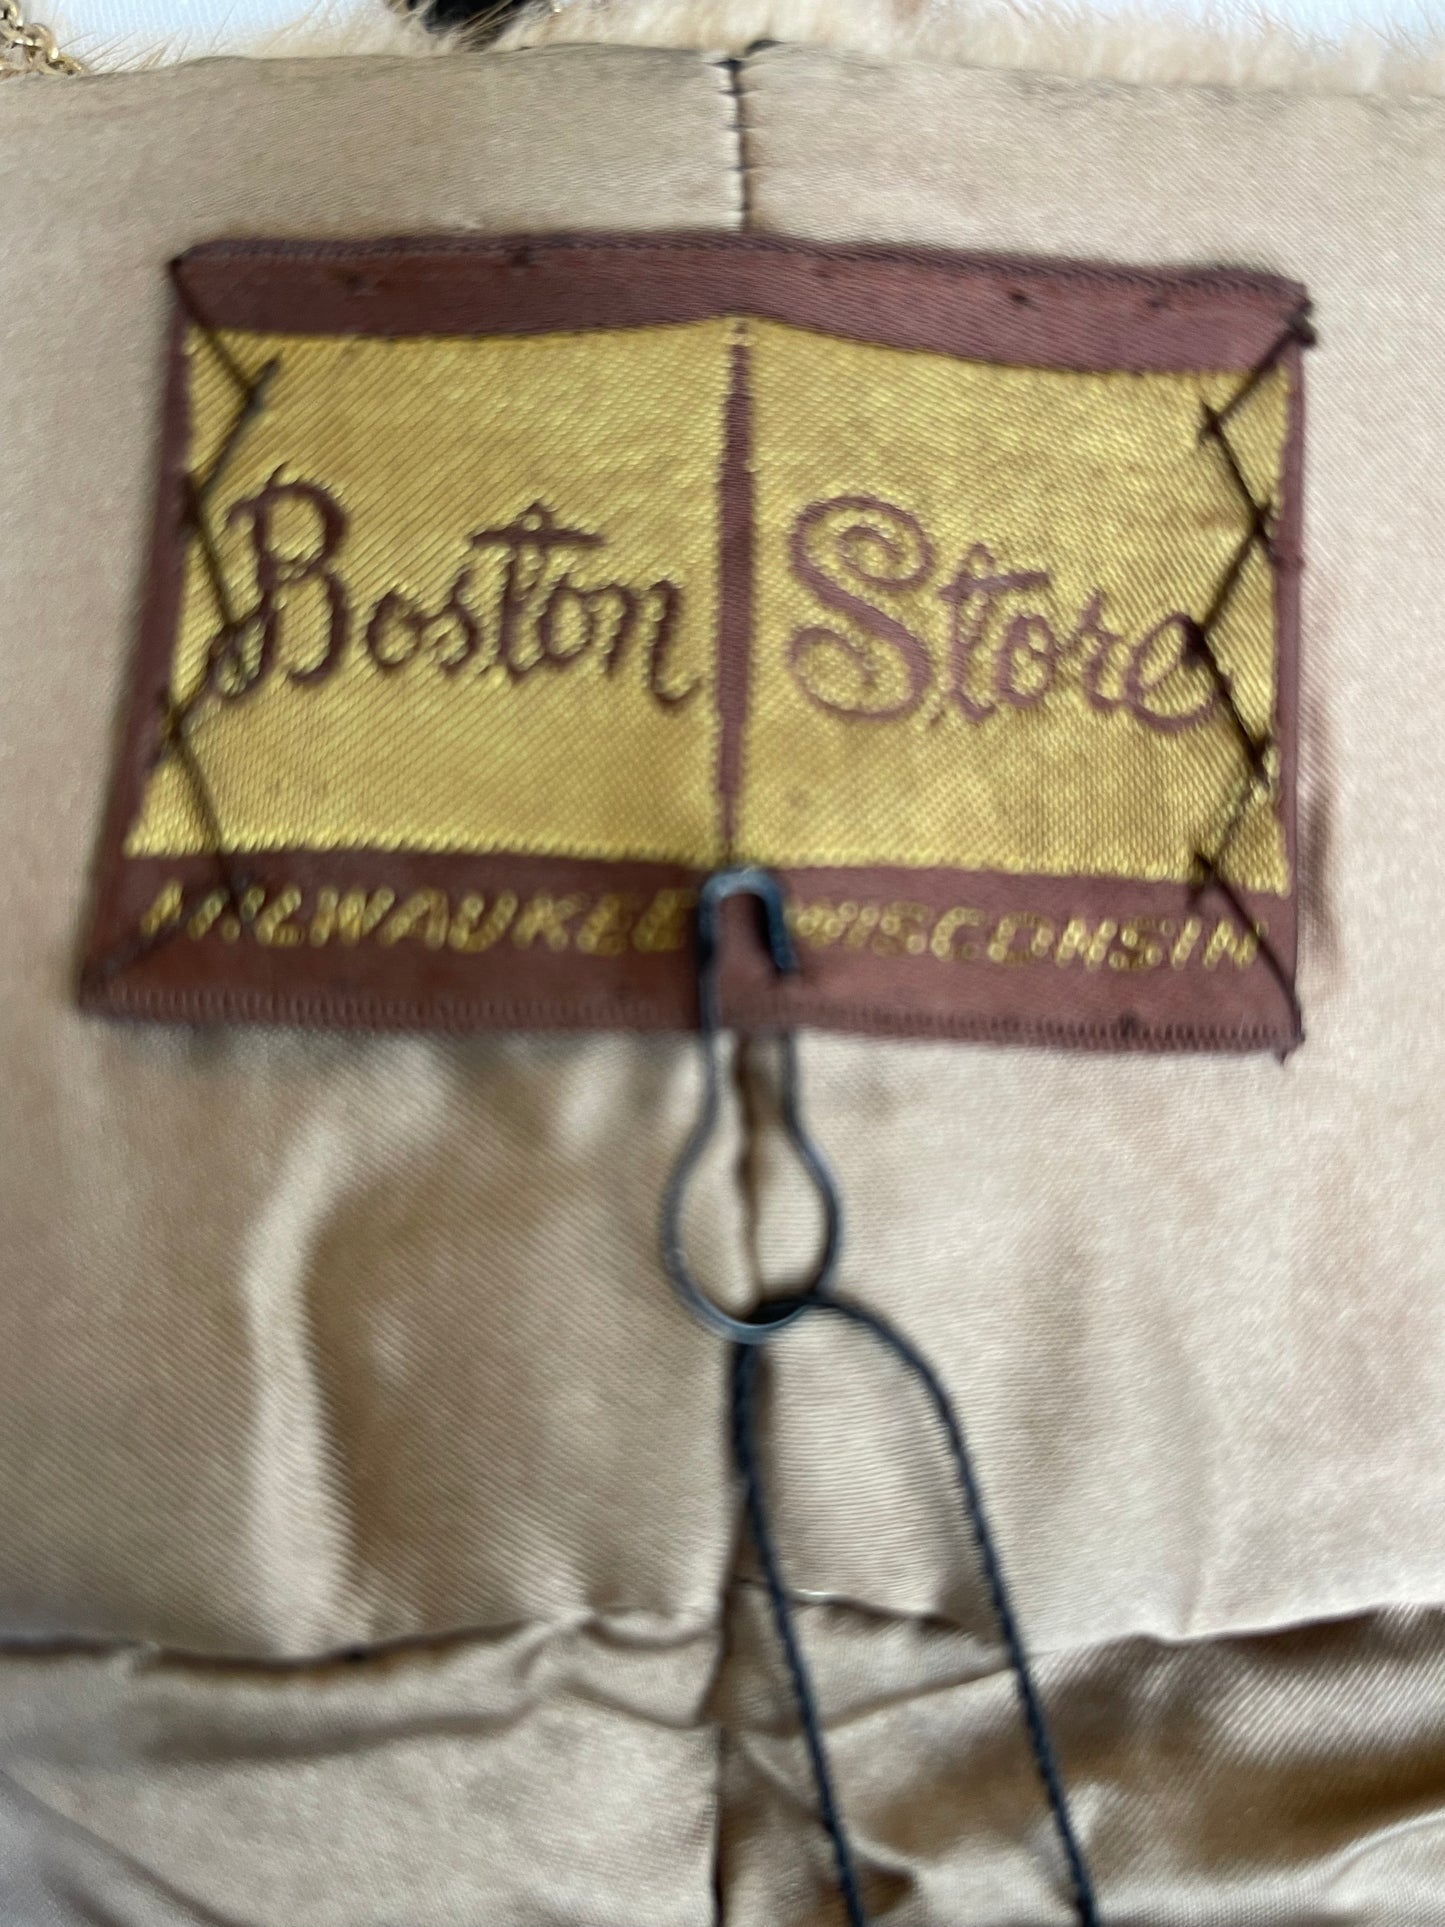 Boston Store Mink Stole